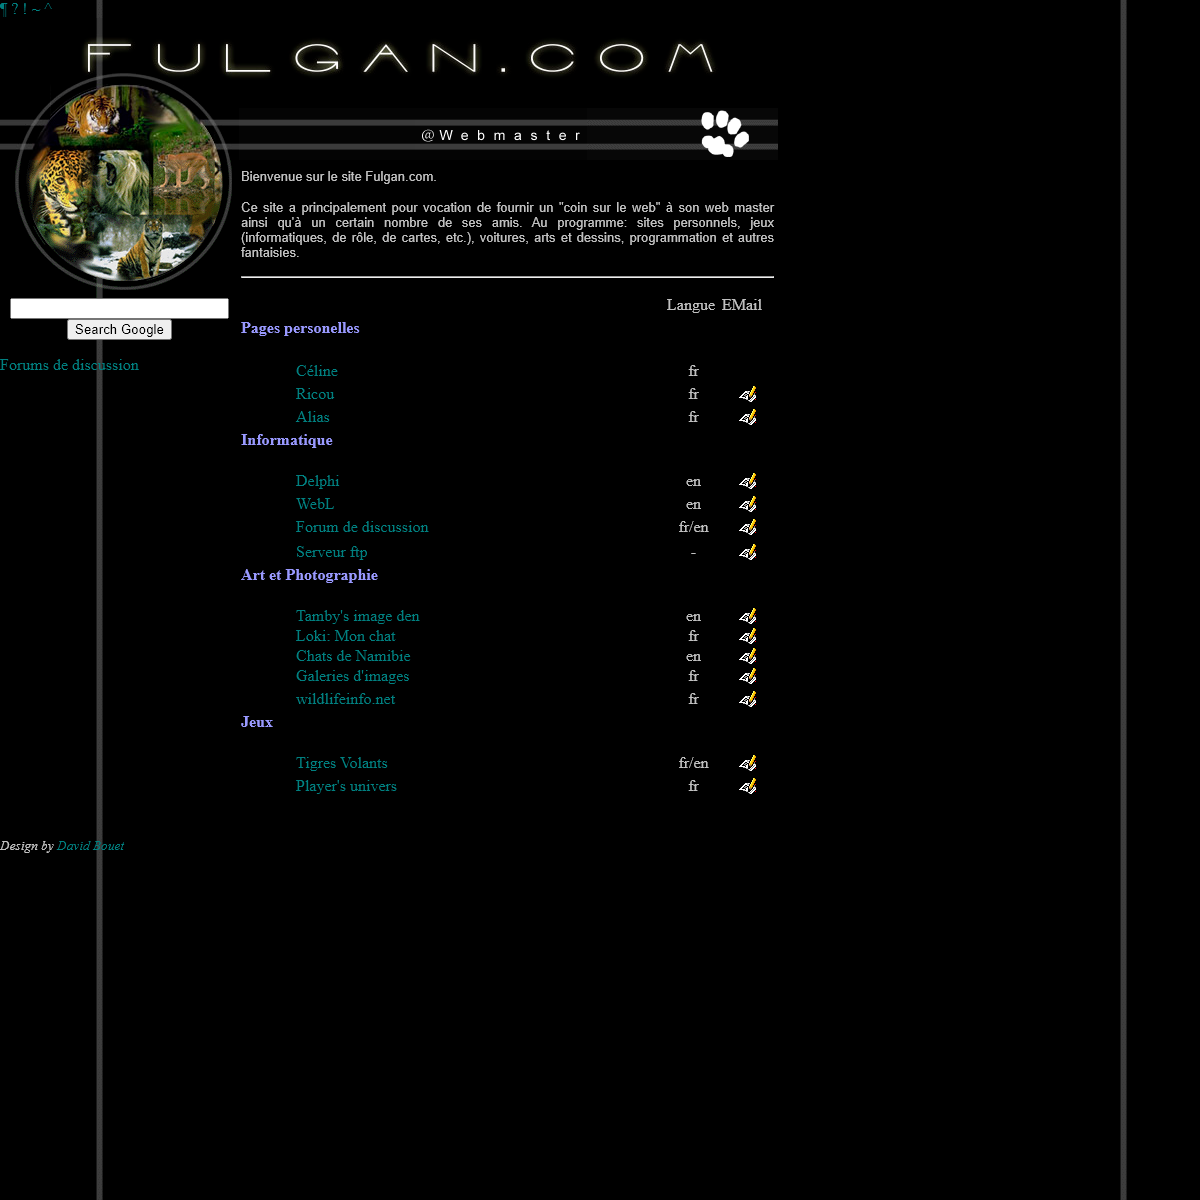 A complete backup of fulgan.com